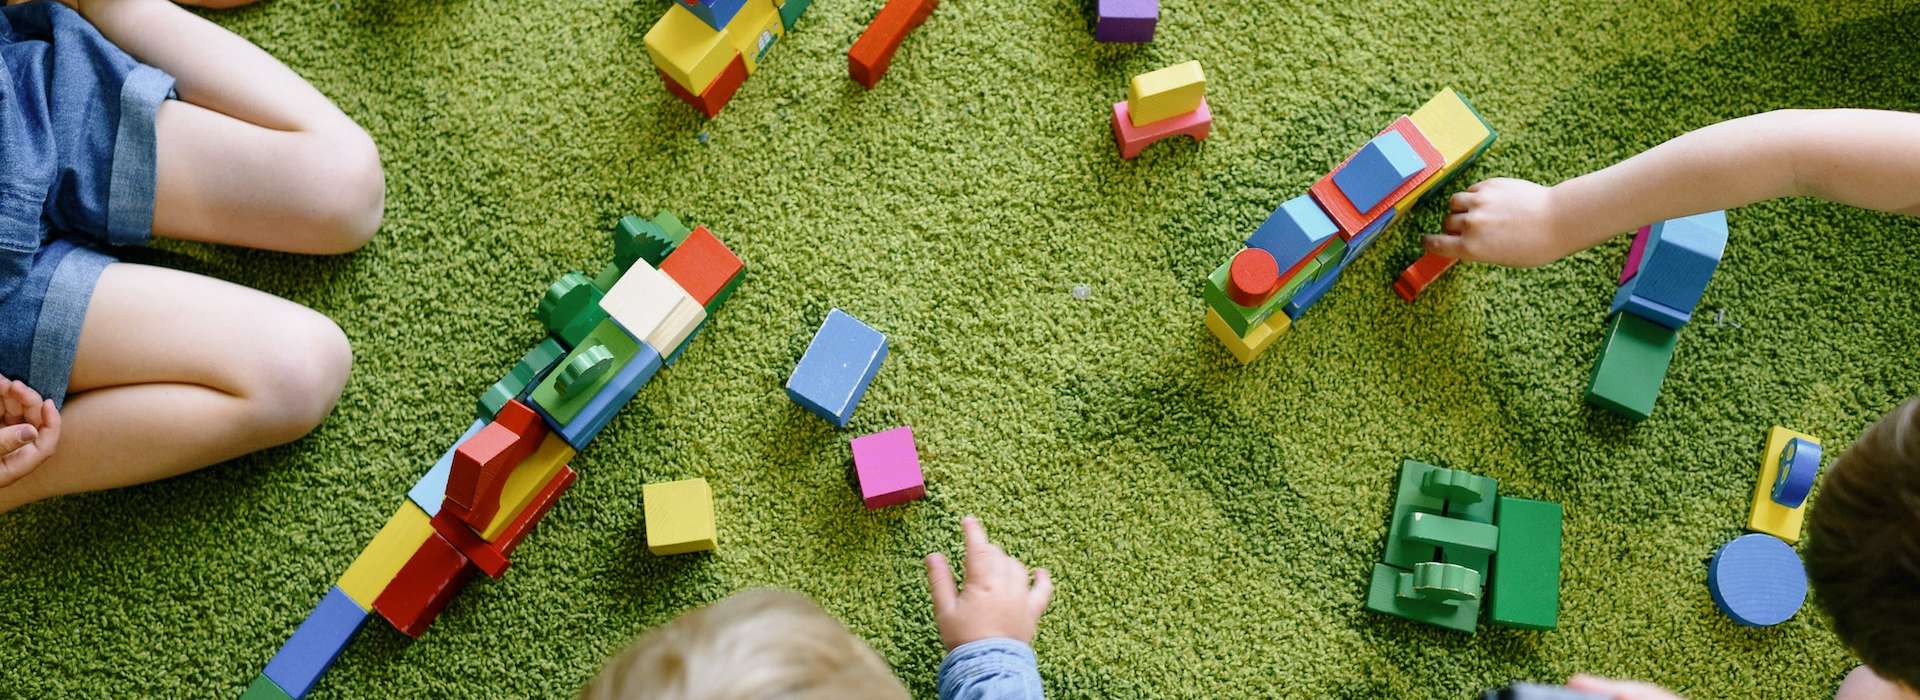 Kindertagesbetreuung. Das Symbolbild zeigt angedeutet drei Kinder mit Spielzeug auf einem grünen Teppich.